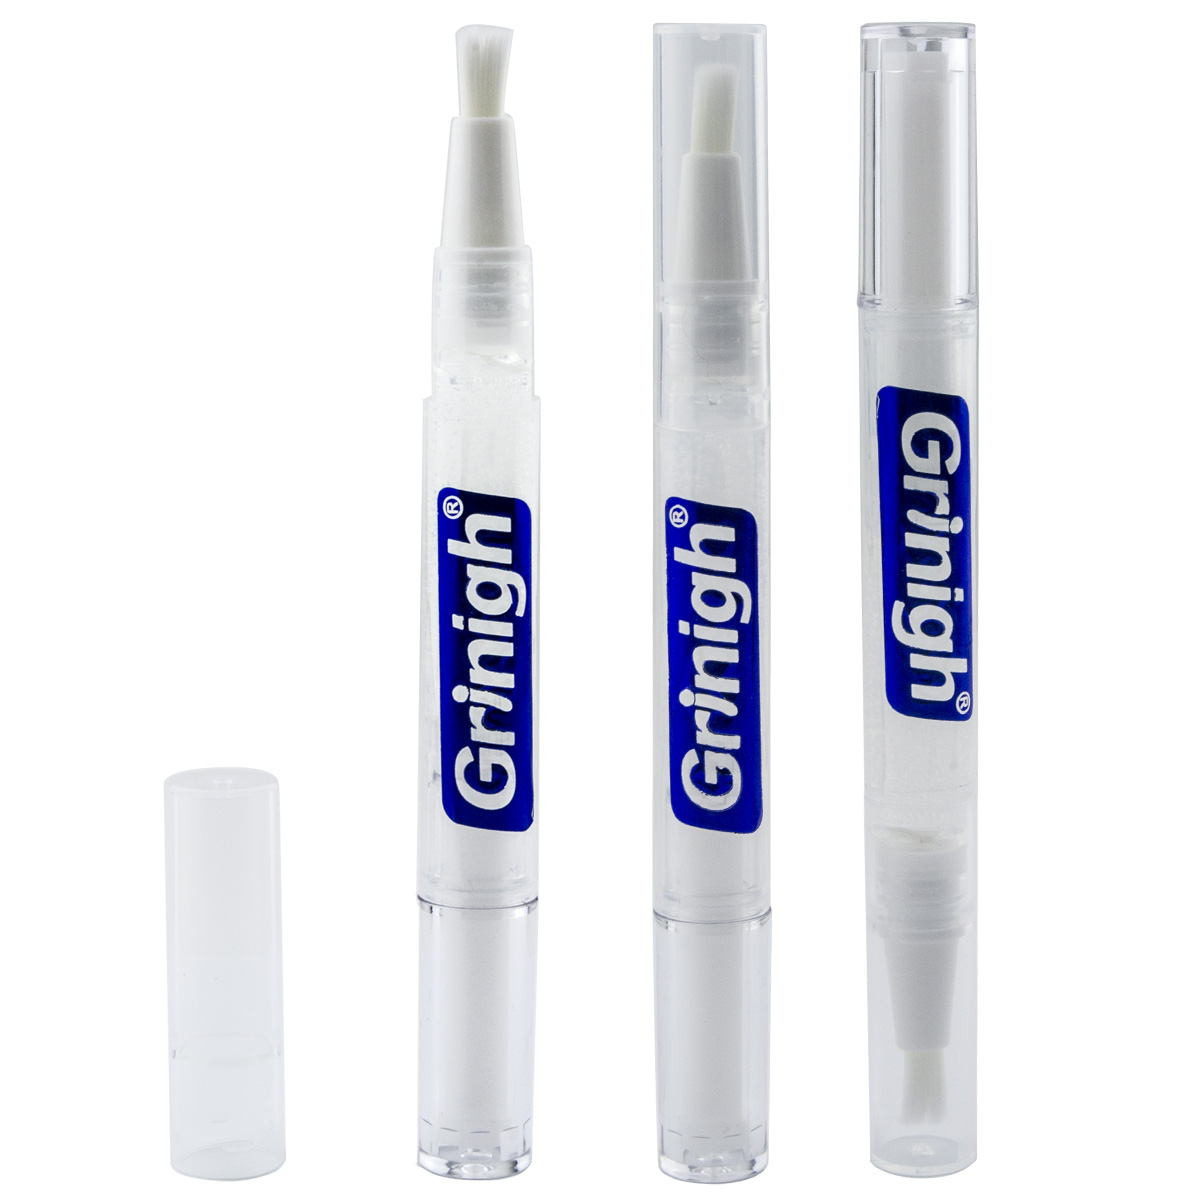 Grin365 précises dents blanches blanchissant Pen Applicator avec des ingrédients naturels - 3 Compter - Gel concentré Force (6% Peroxyde d'hydrogène)